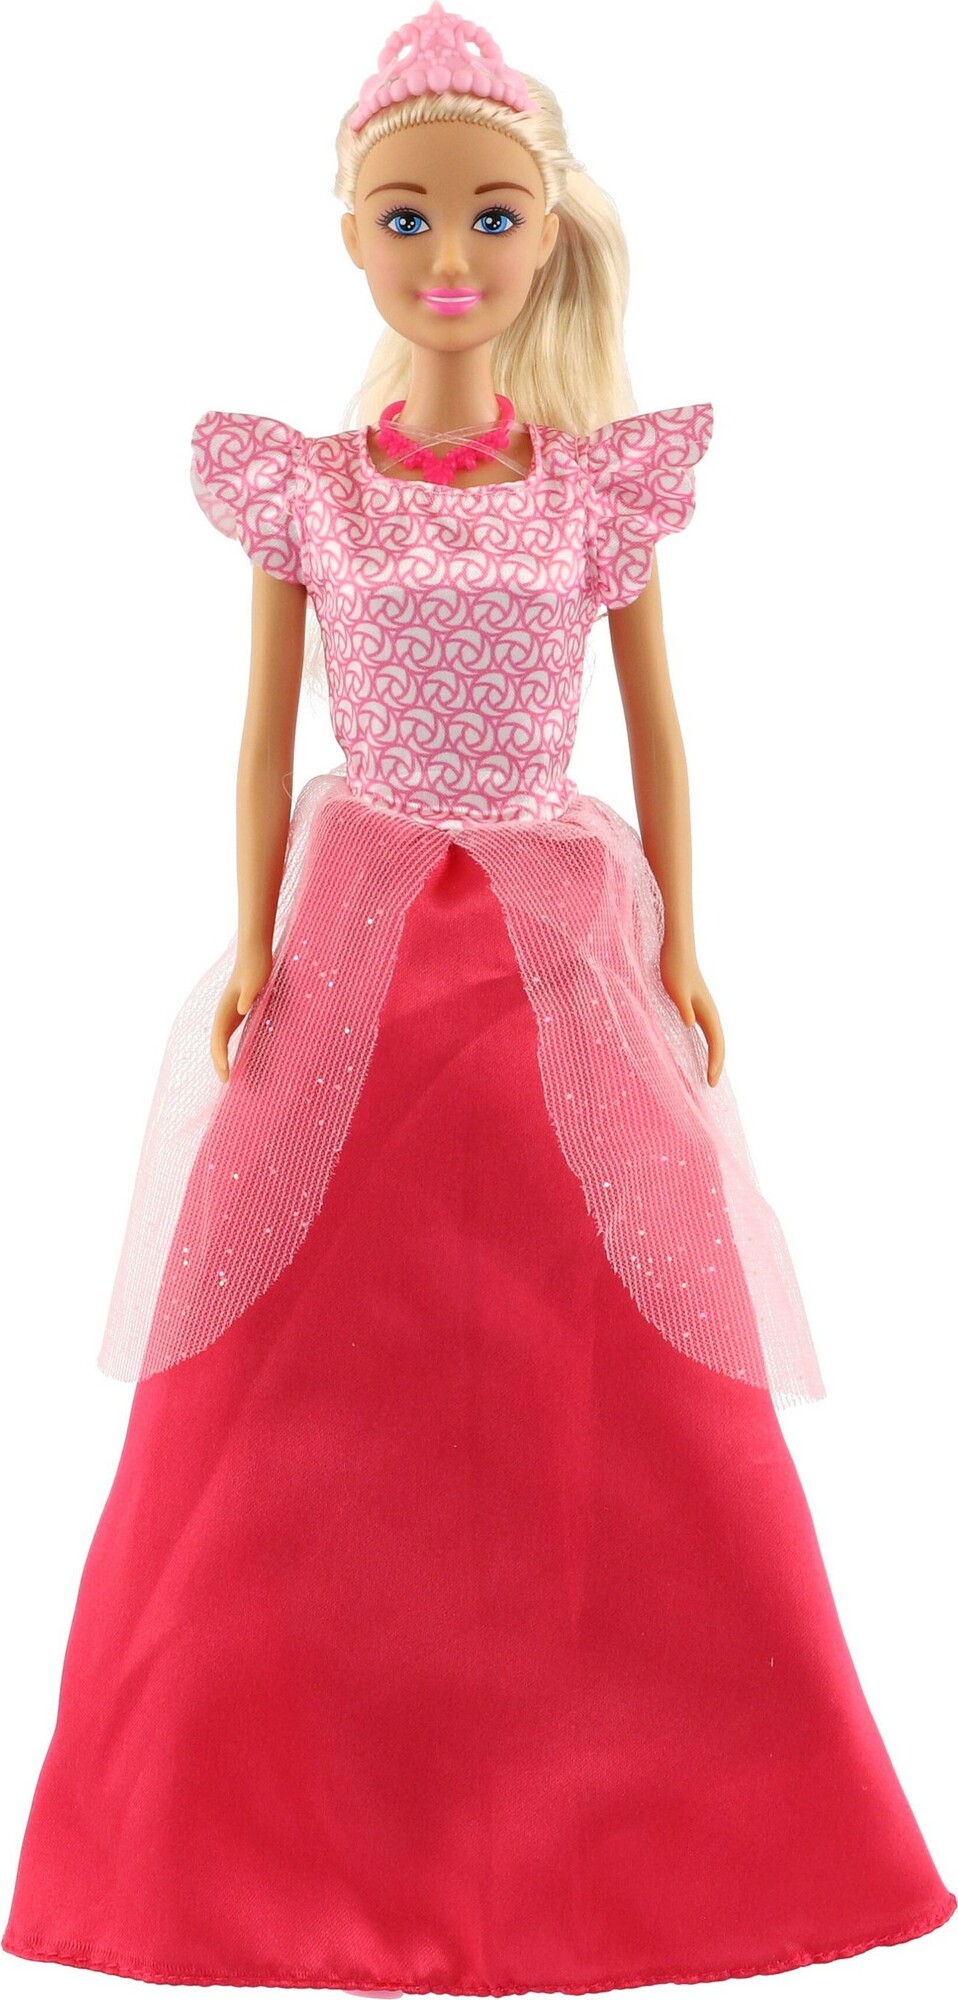 Bambola barbie alta 71 cm con abito arcobaleno e accessori moda - Toys  Center